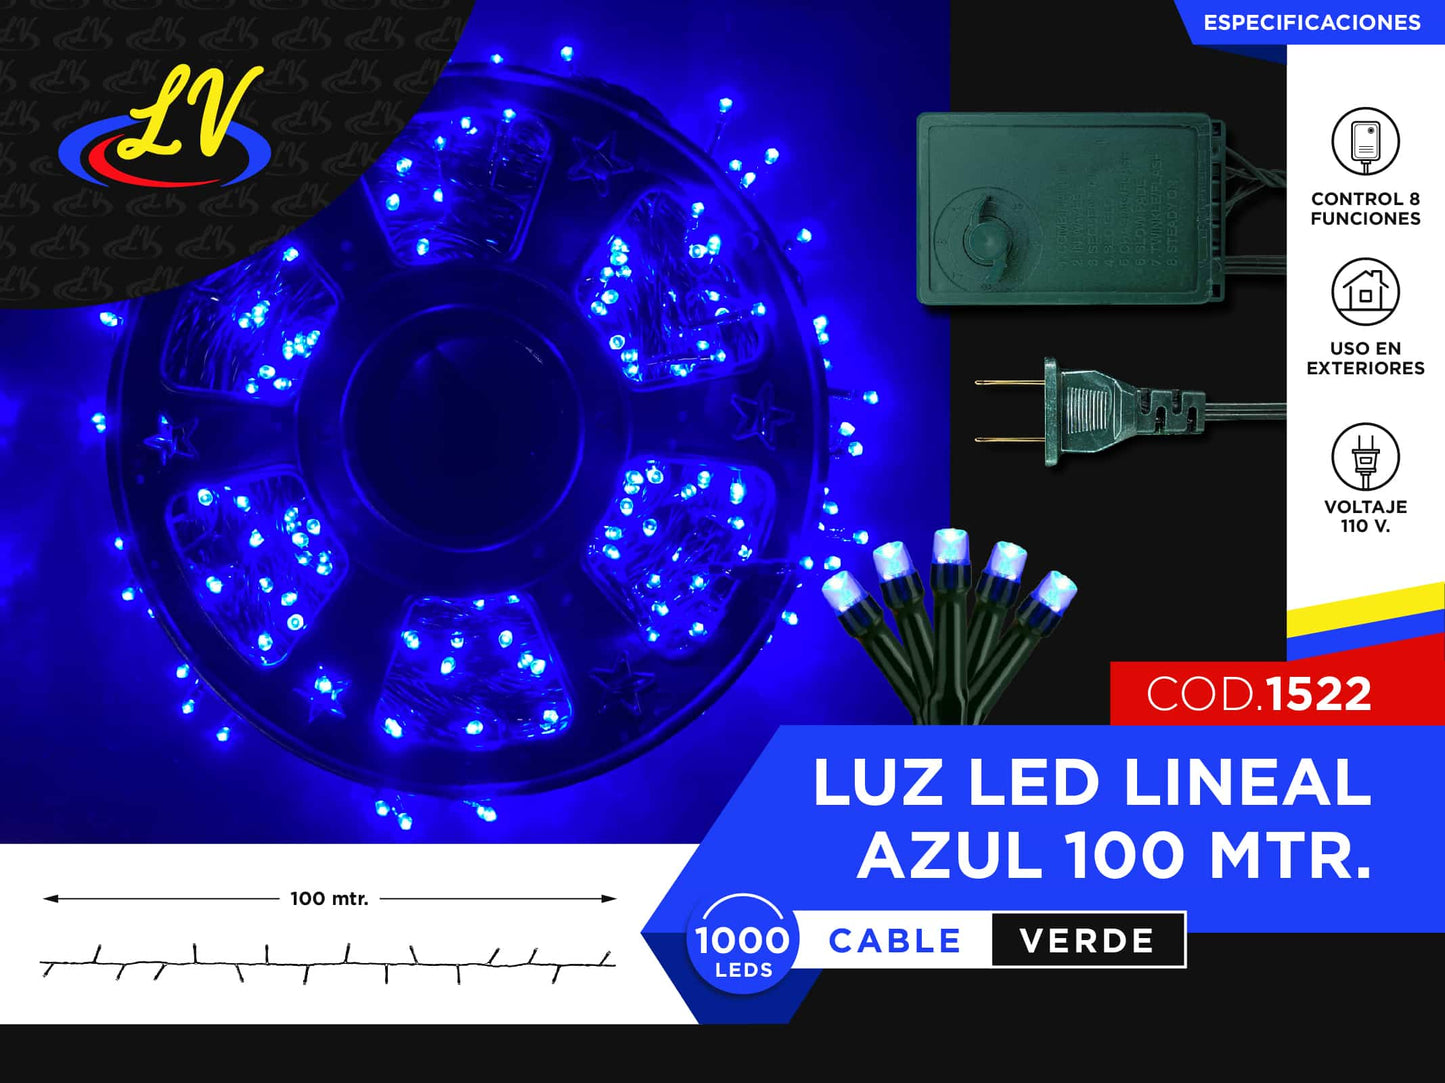 LINEAL TIPO UL – AZUL – 100 MTS